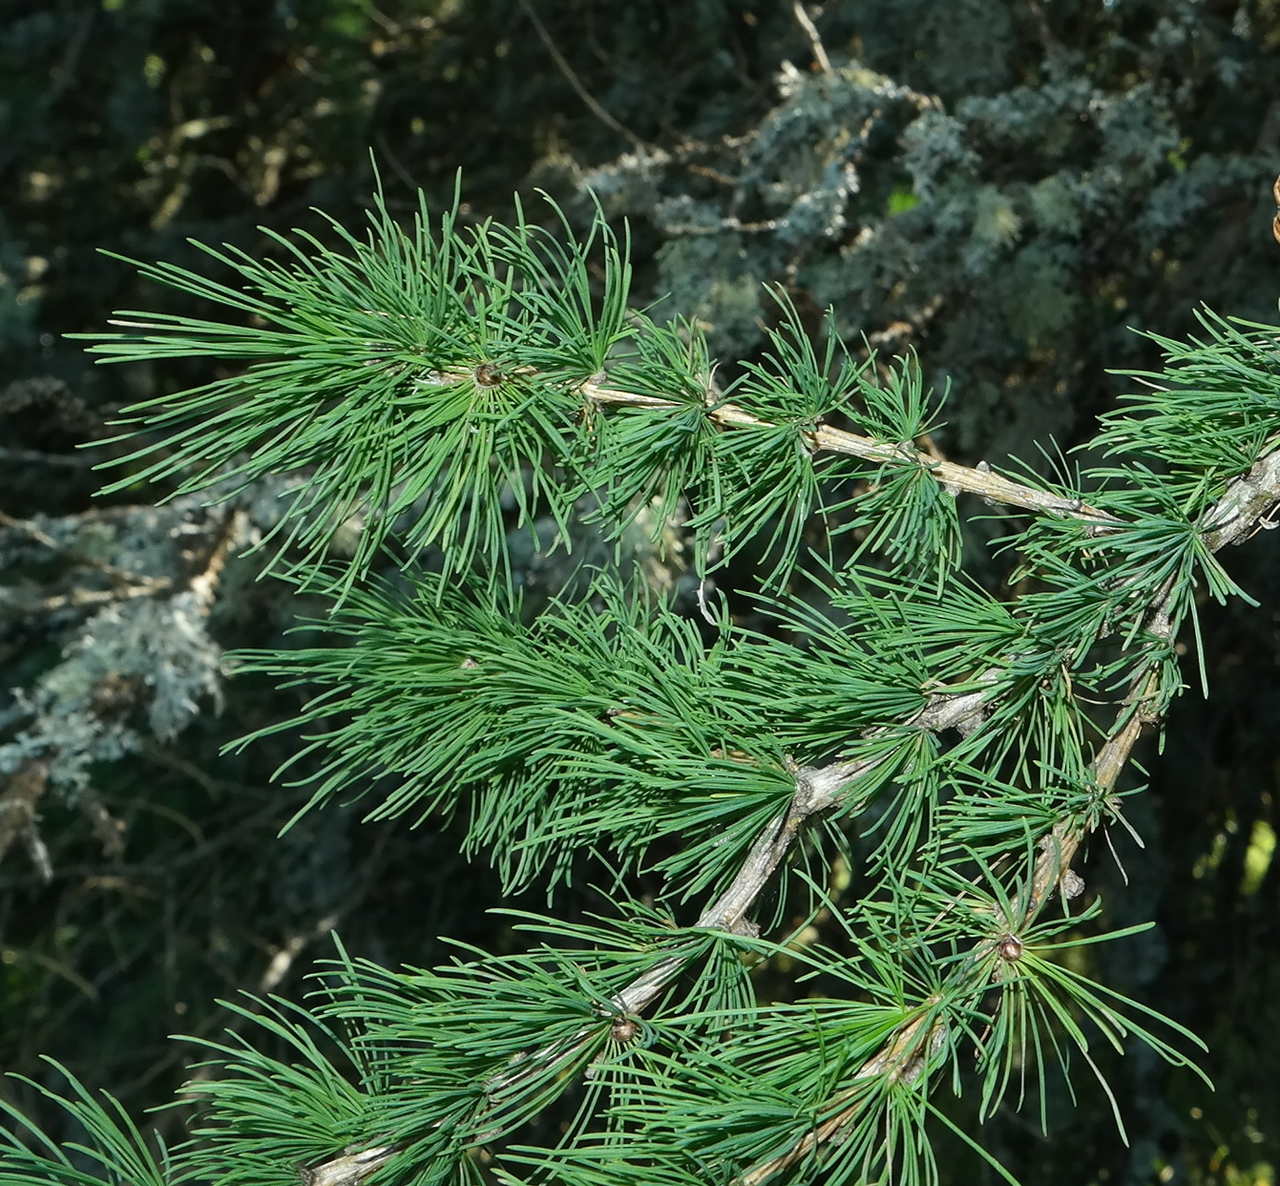 Image of genus Larix specimen.